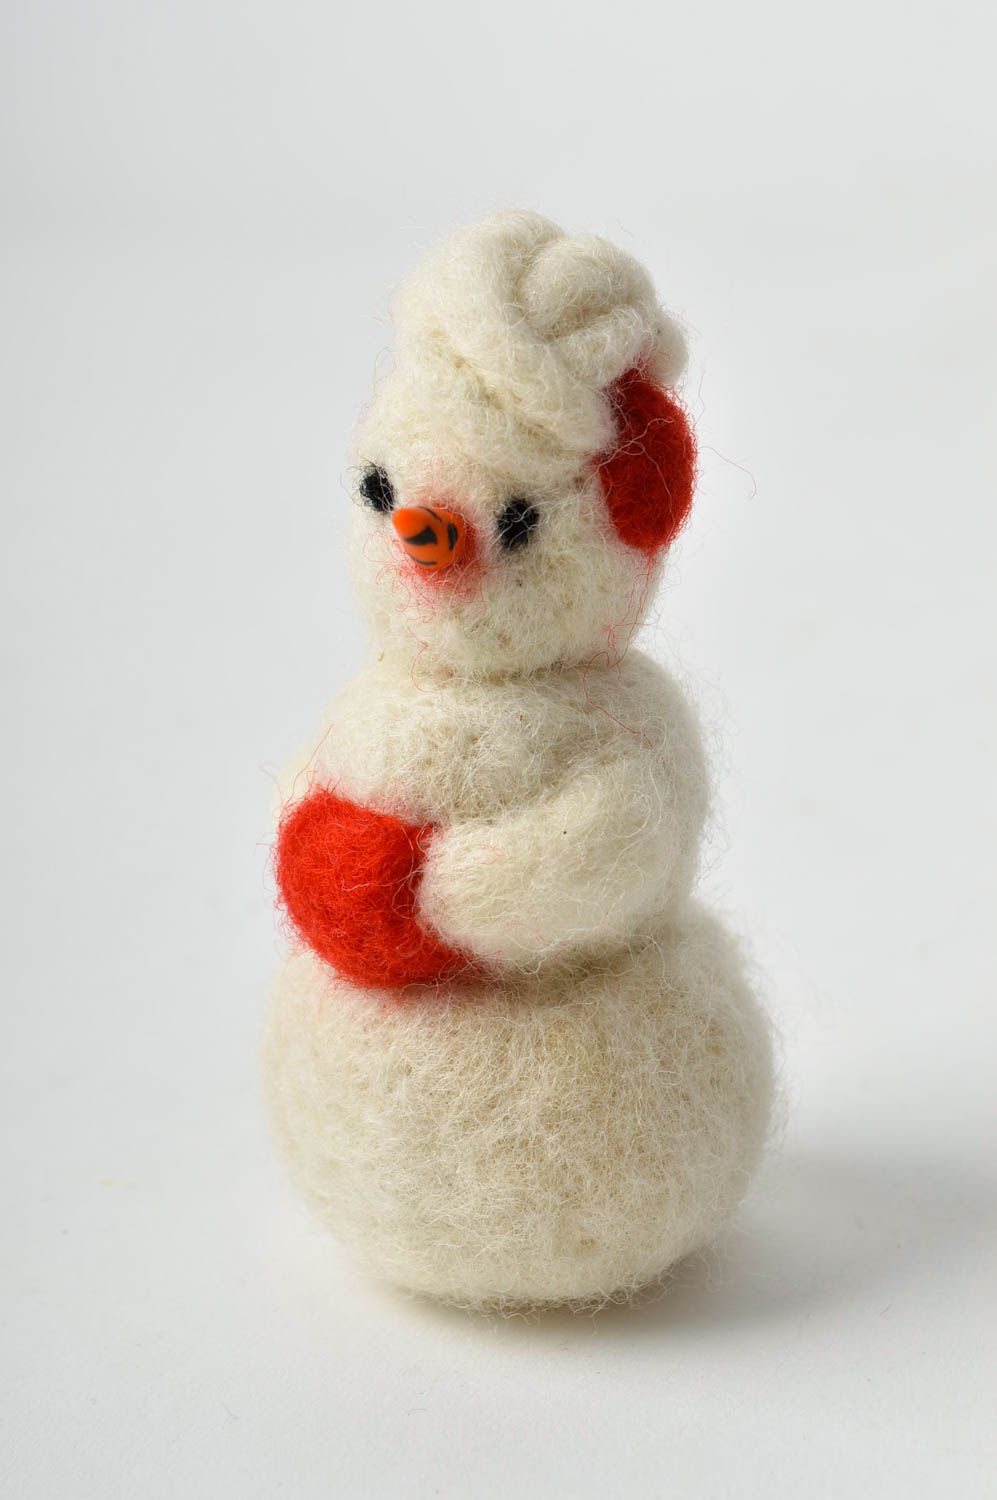 Валяная игрушка ручной работы игрушка из шерсти мягкая игрушка Снеговик фото 3